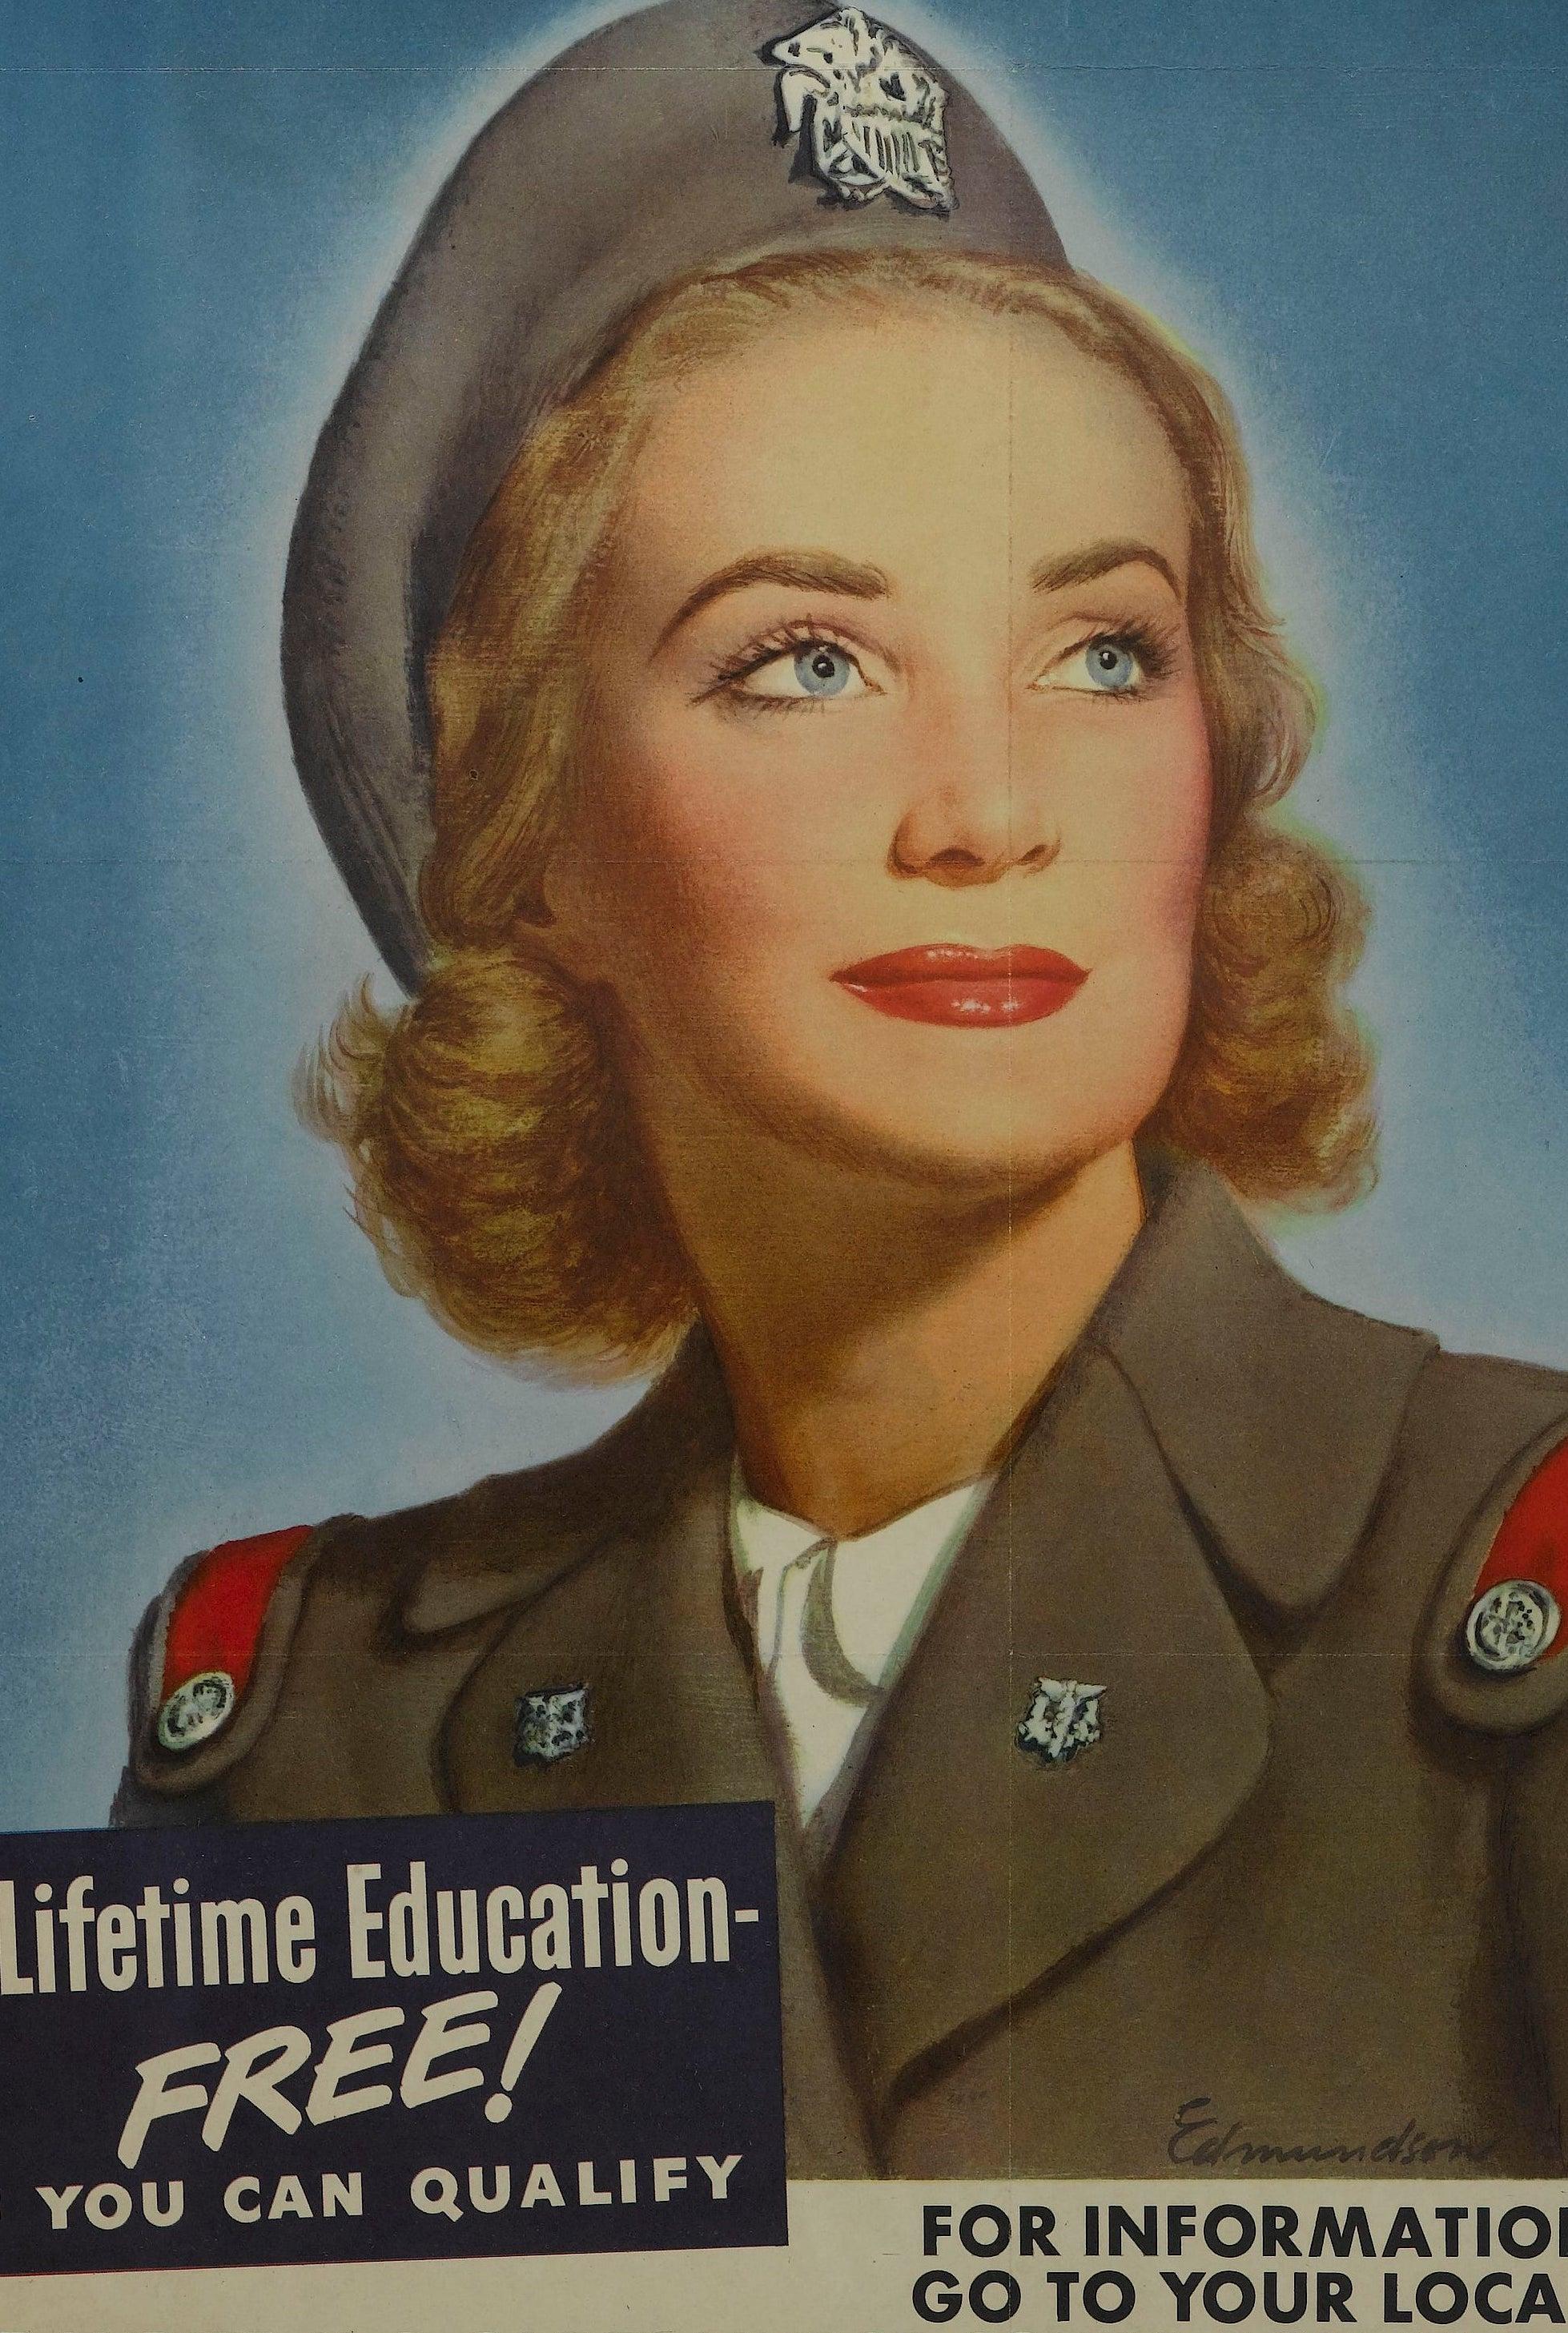 Nous vous proposons une affiche de recrutement du Corps des infirmières des cadets américains datant de la Seconde Guerre mondiale. Mettant en évidence une cadette en uniforme, l'affiche encourage les lecteurs à 